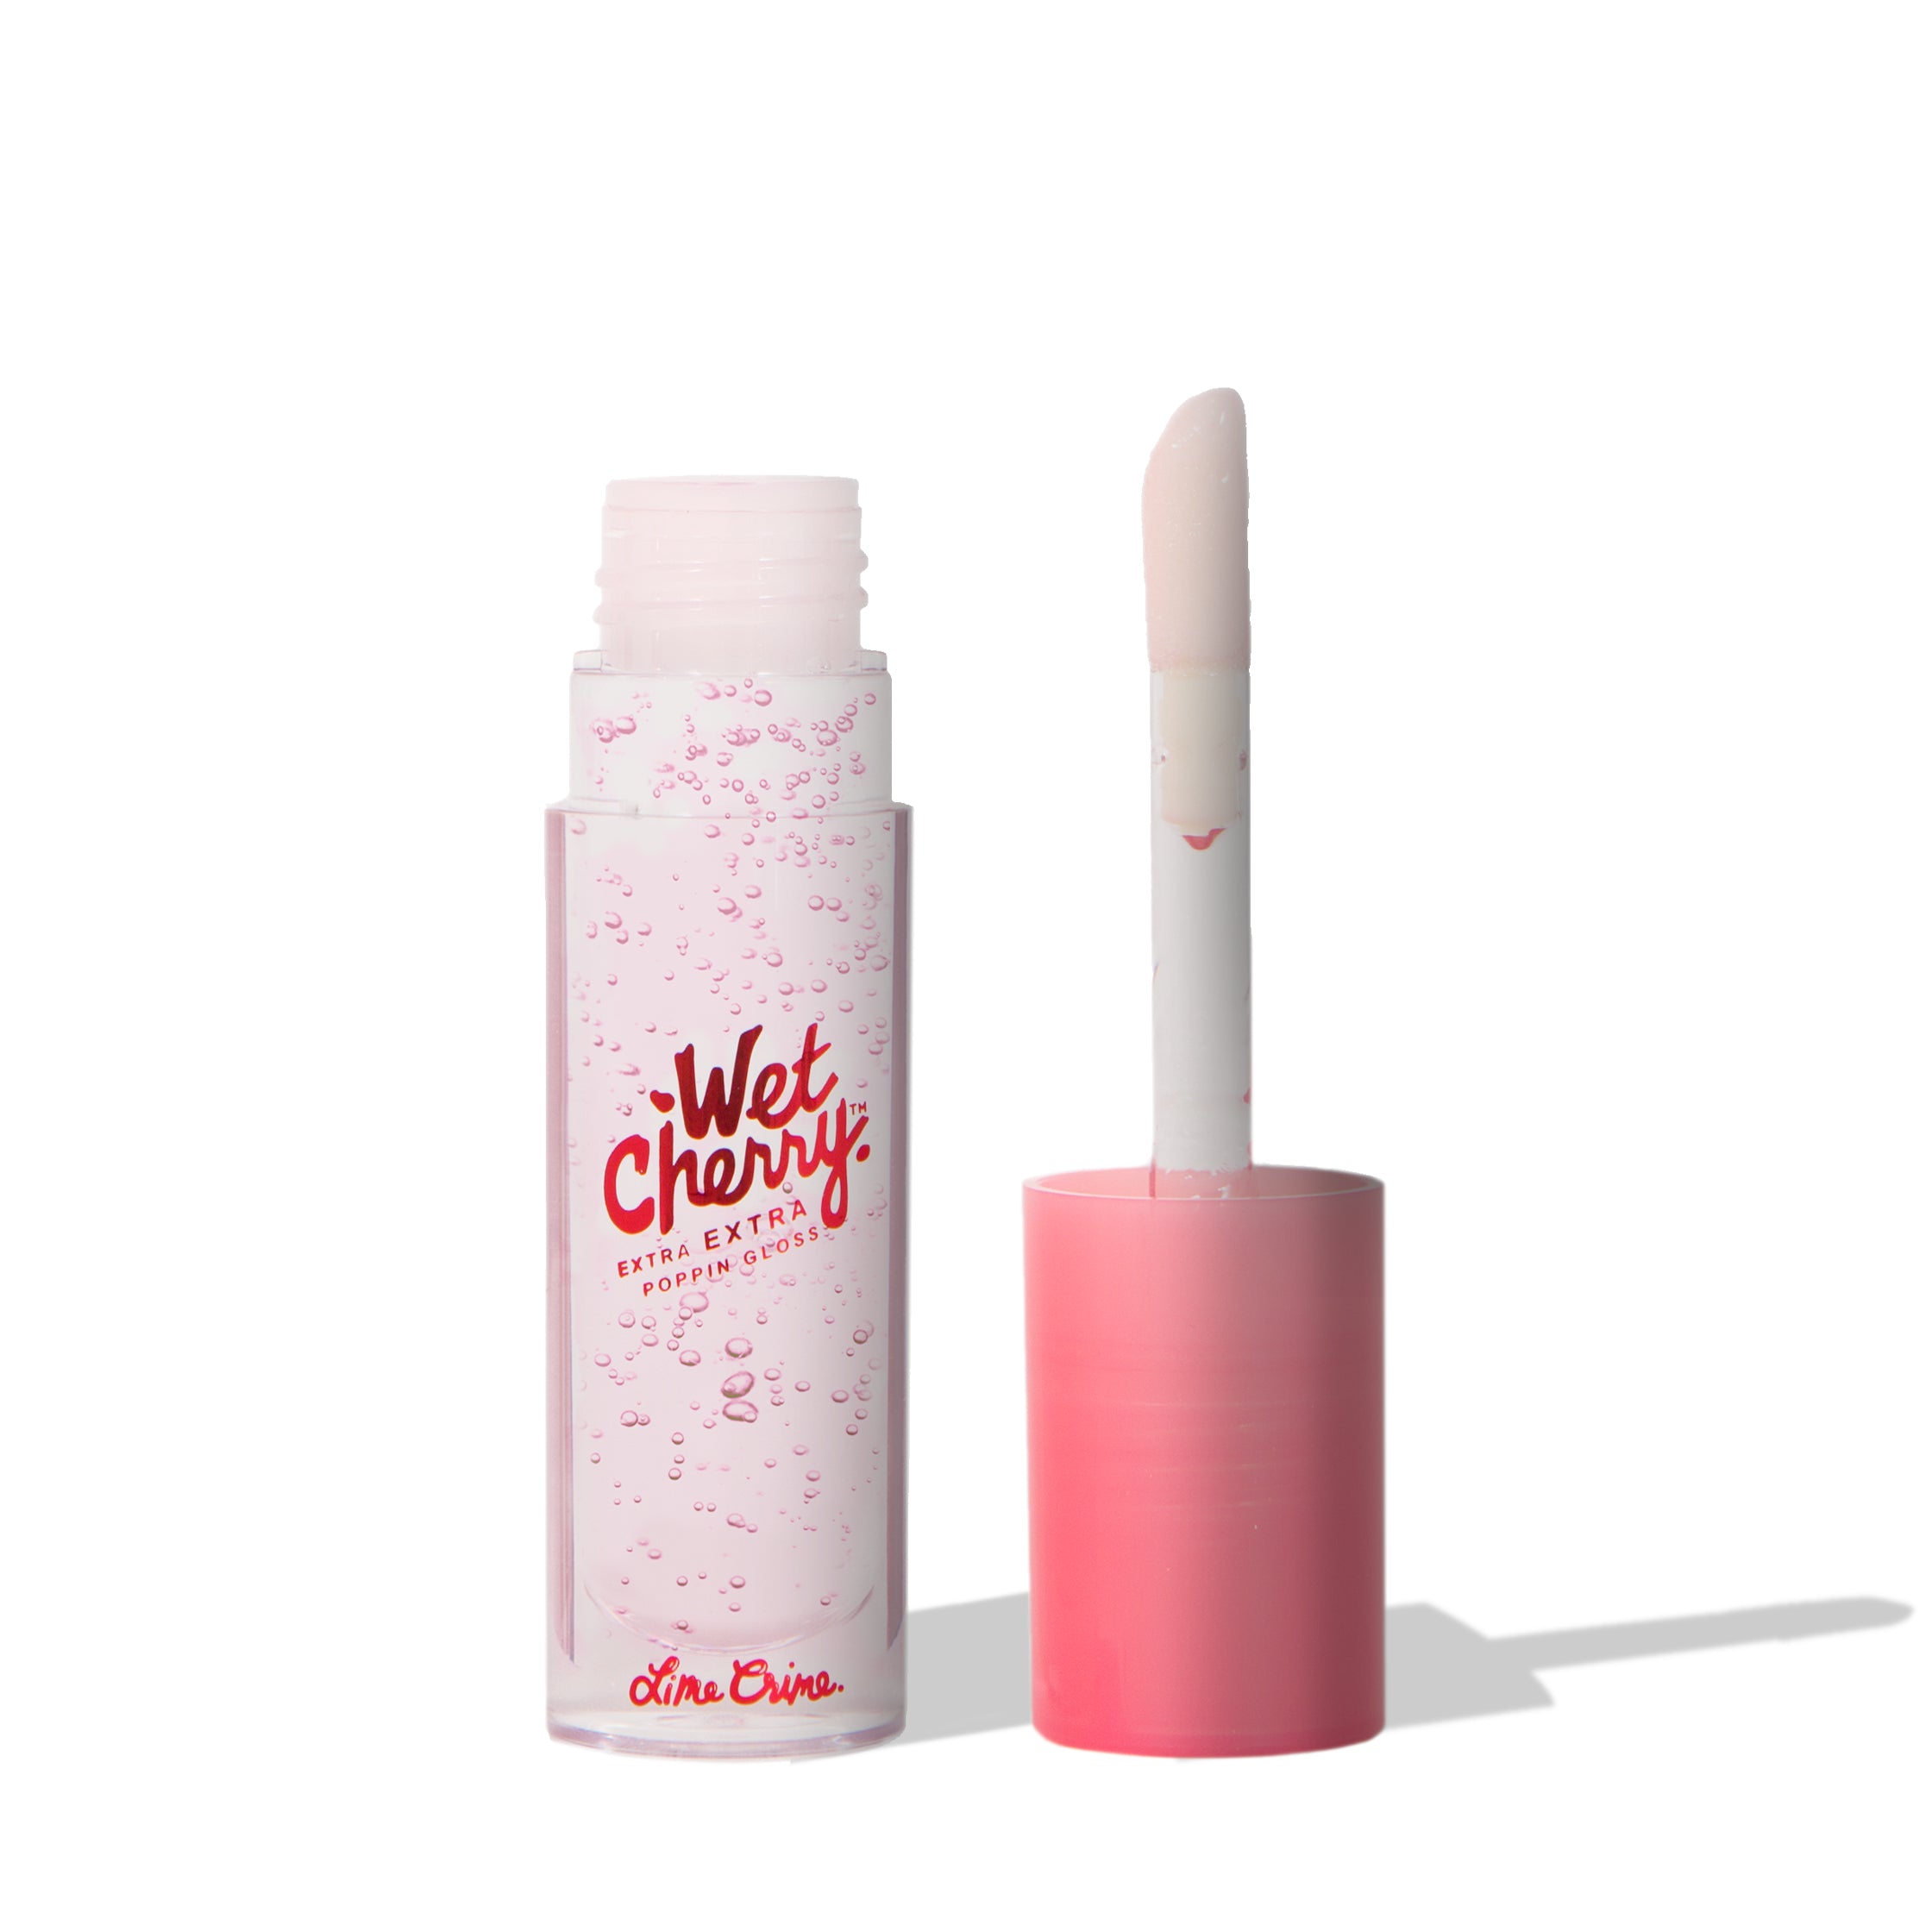 Wet Cherry Lip Gloss variant:Extra Extra Poppin